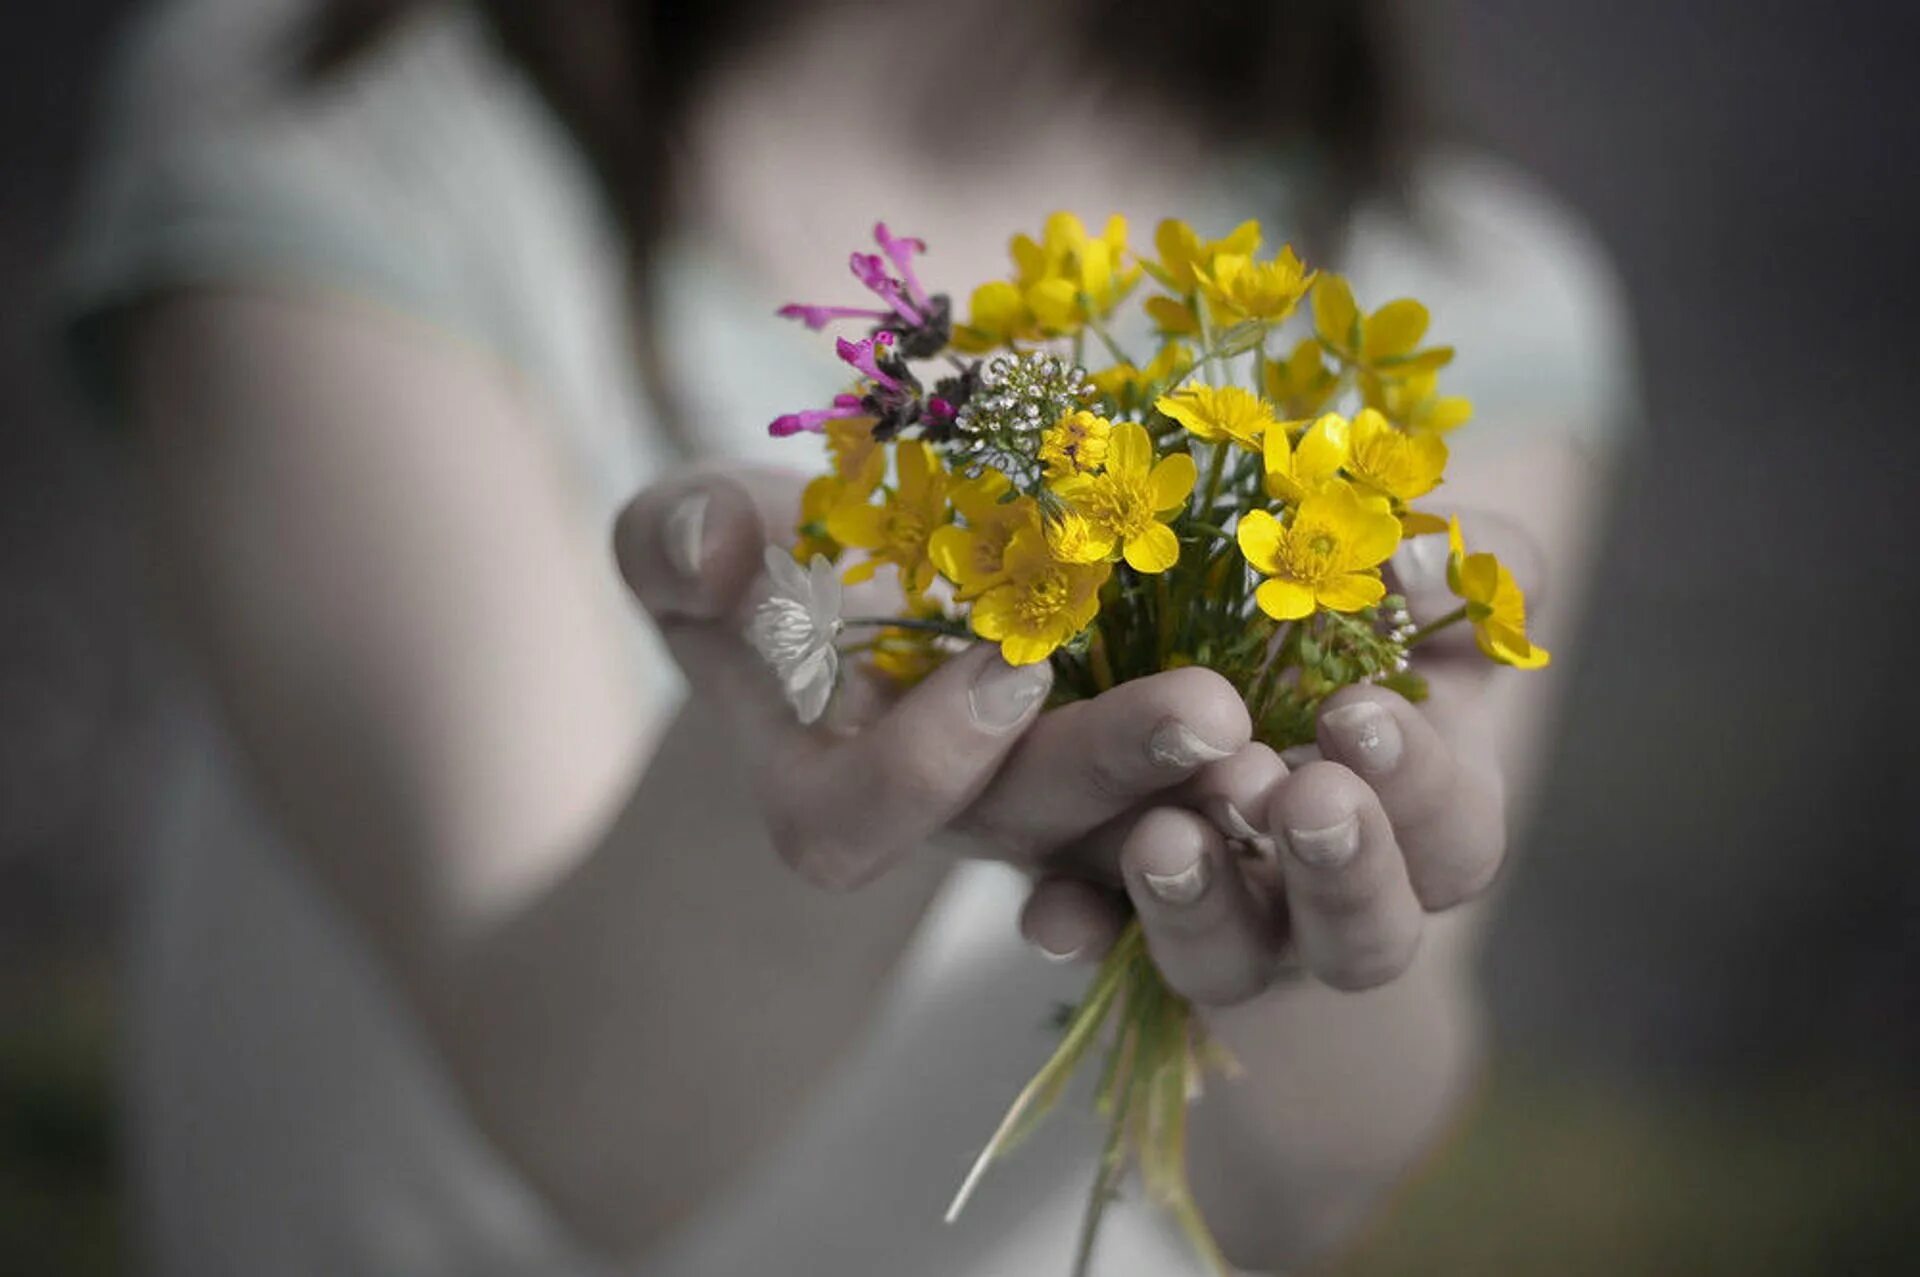 Иметь счастья жить. Цветы в ладонях. Цветы радости. Цветы радости жизни. Счастье в руках.